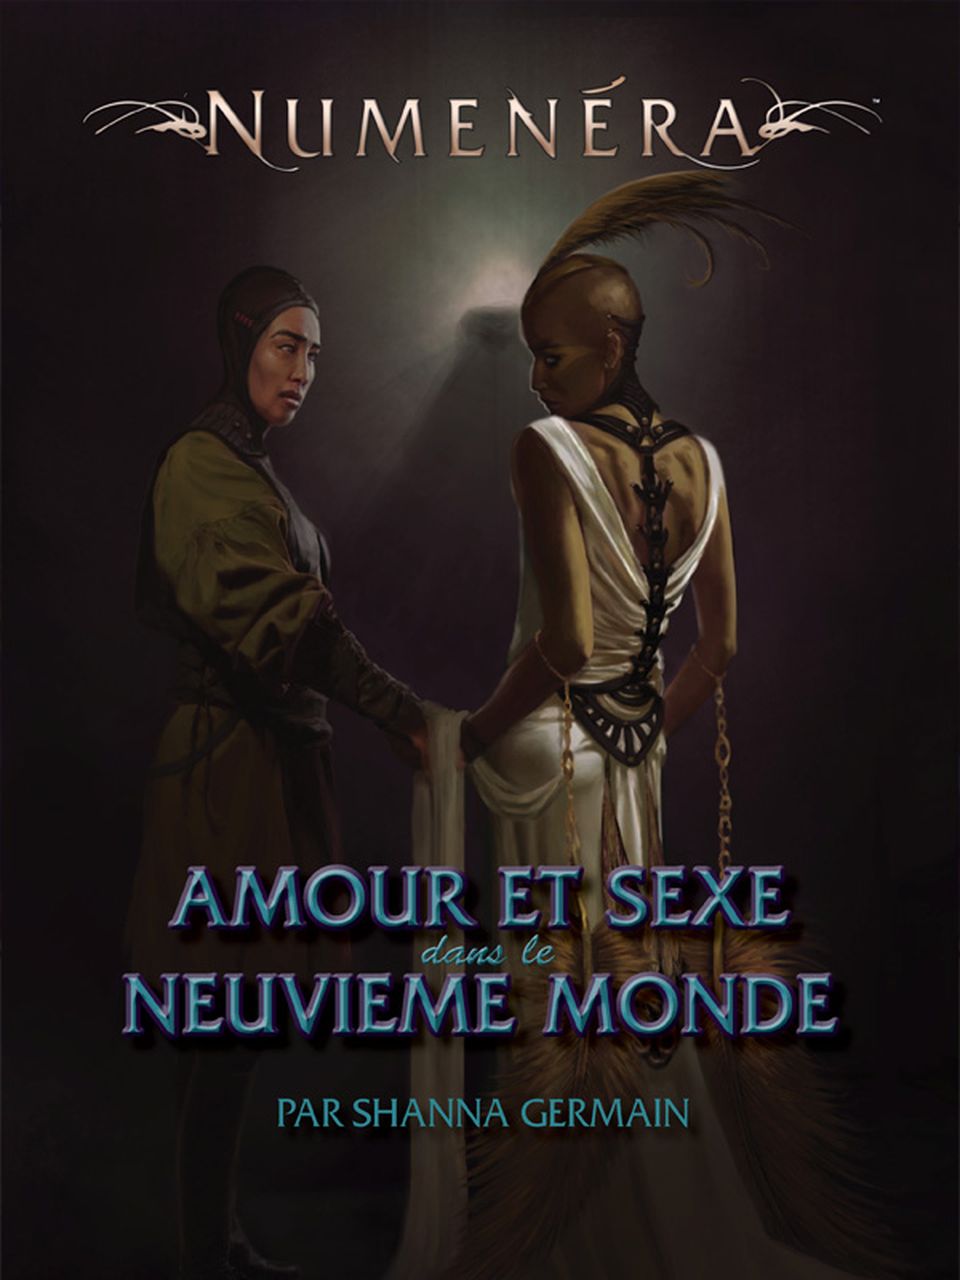 Numenéra - Amour et sexe dans le Neuvième monde image